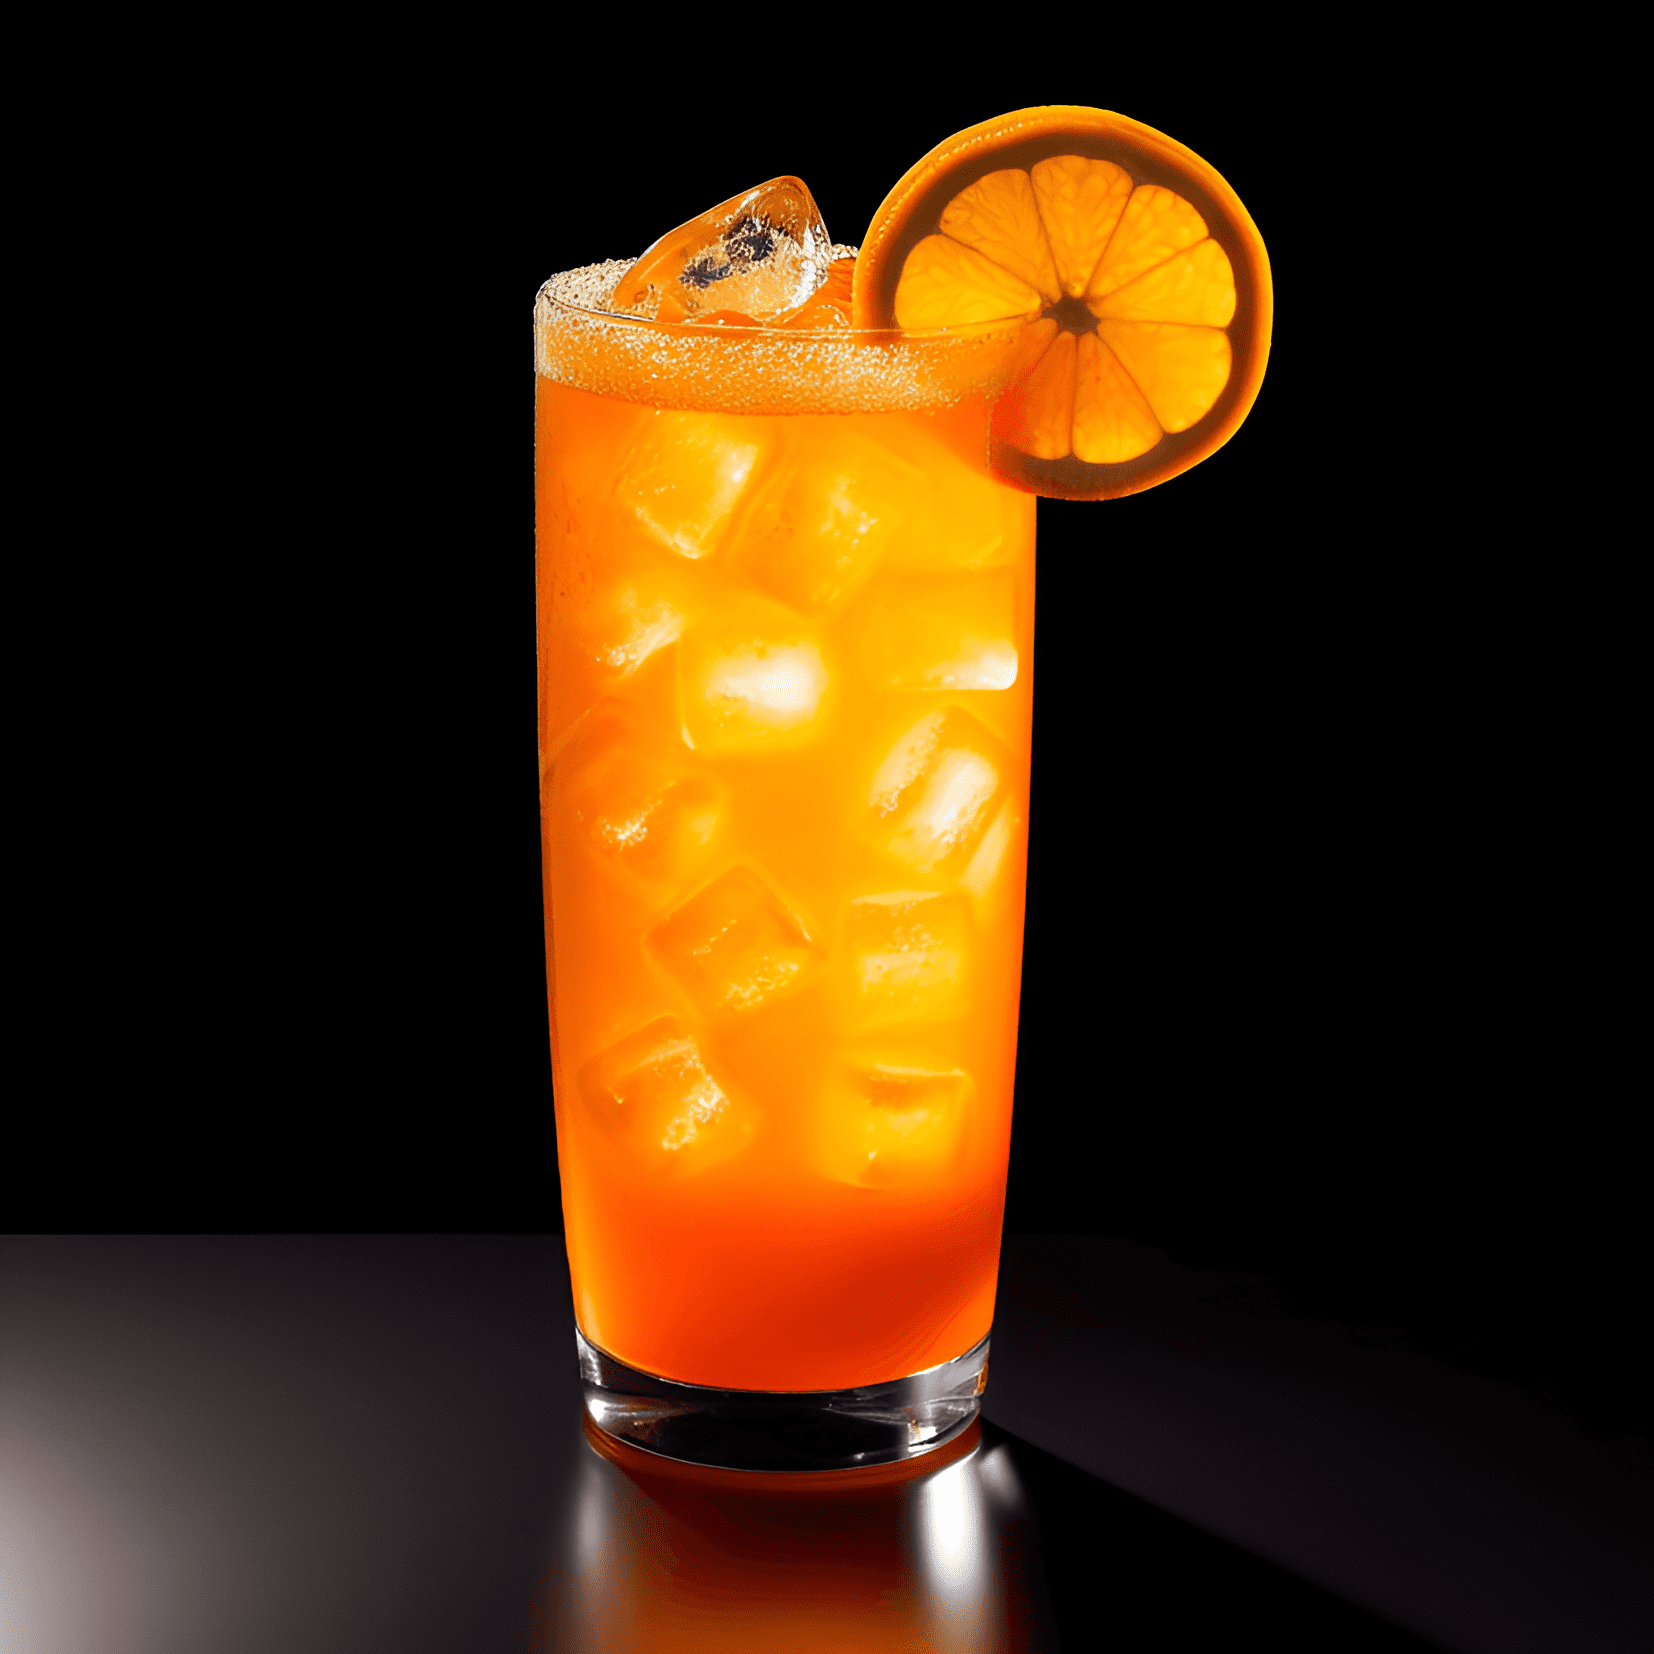 Orange Crush Cóctel Receta - El cóctel Orange Crush es una deliciosa mezcla de sabores dulces, ácidos y ligeramente agrios. El jugo de naranja fresco proporciona dulzura natural, mientras que el vodka y el triple sec agregan un toque sutil. El sabor general es ligero, refrescante y cítrico, lo que lo convierte en una bebida perfecta para el verano.